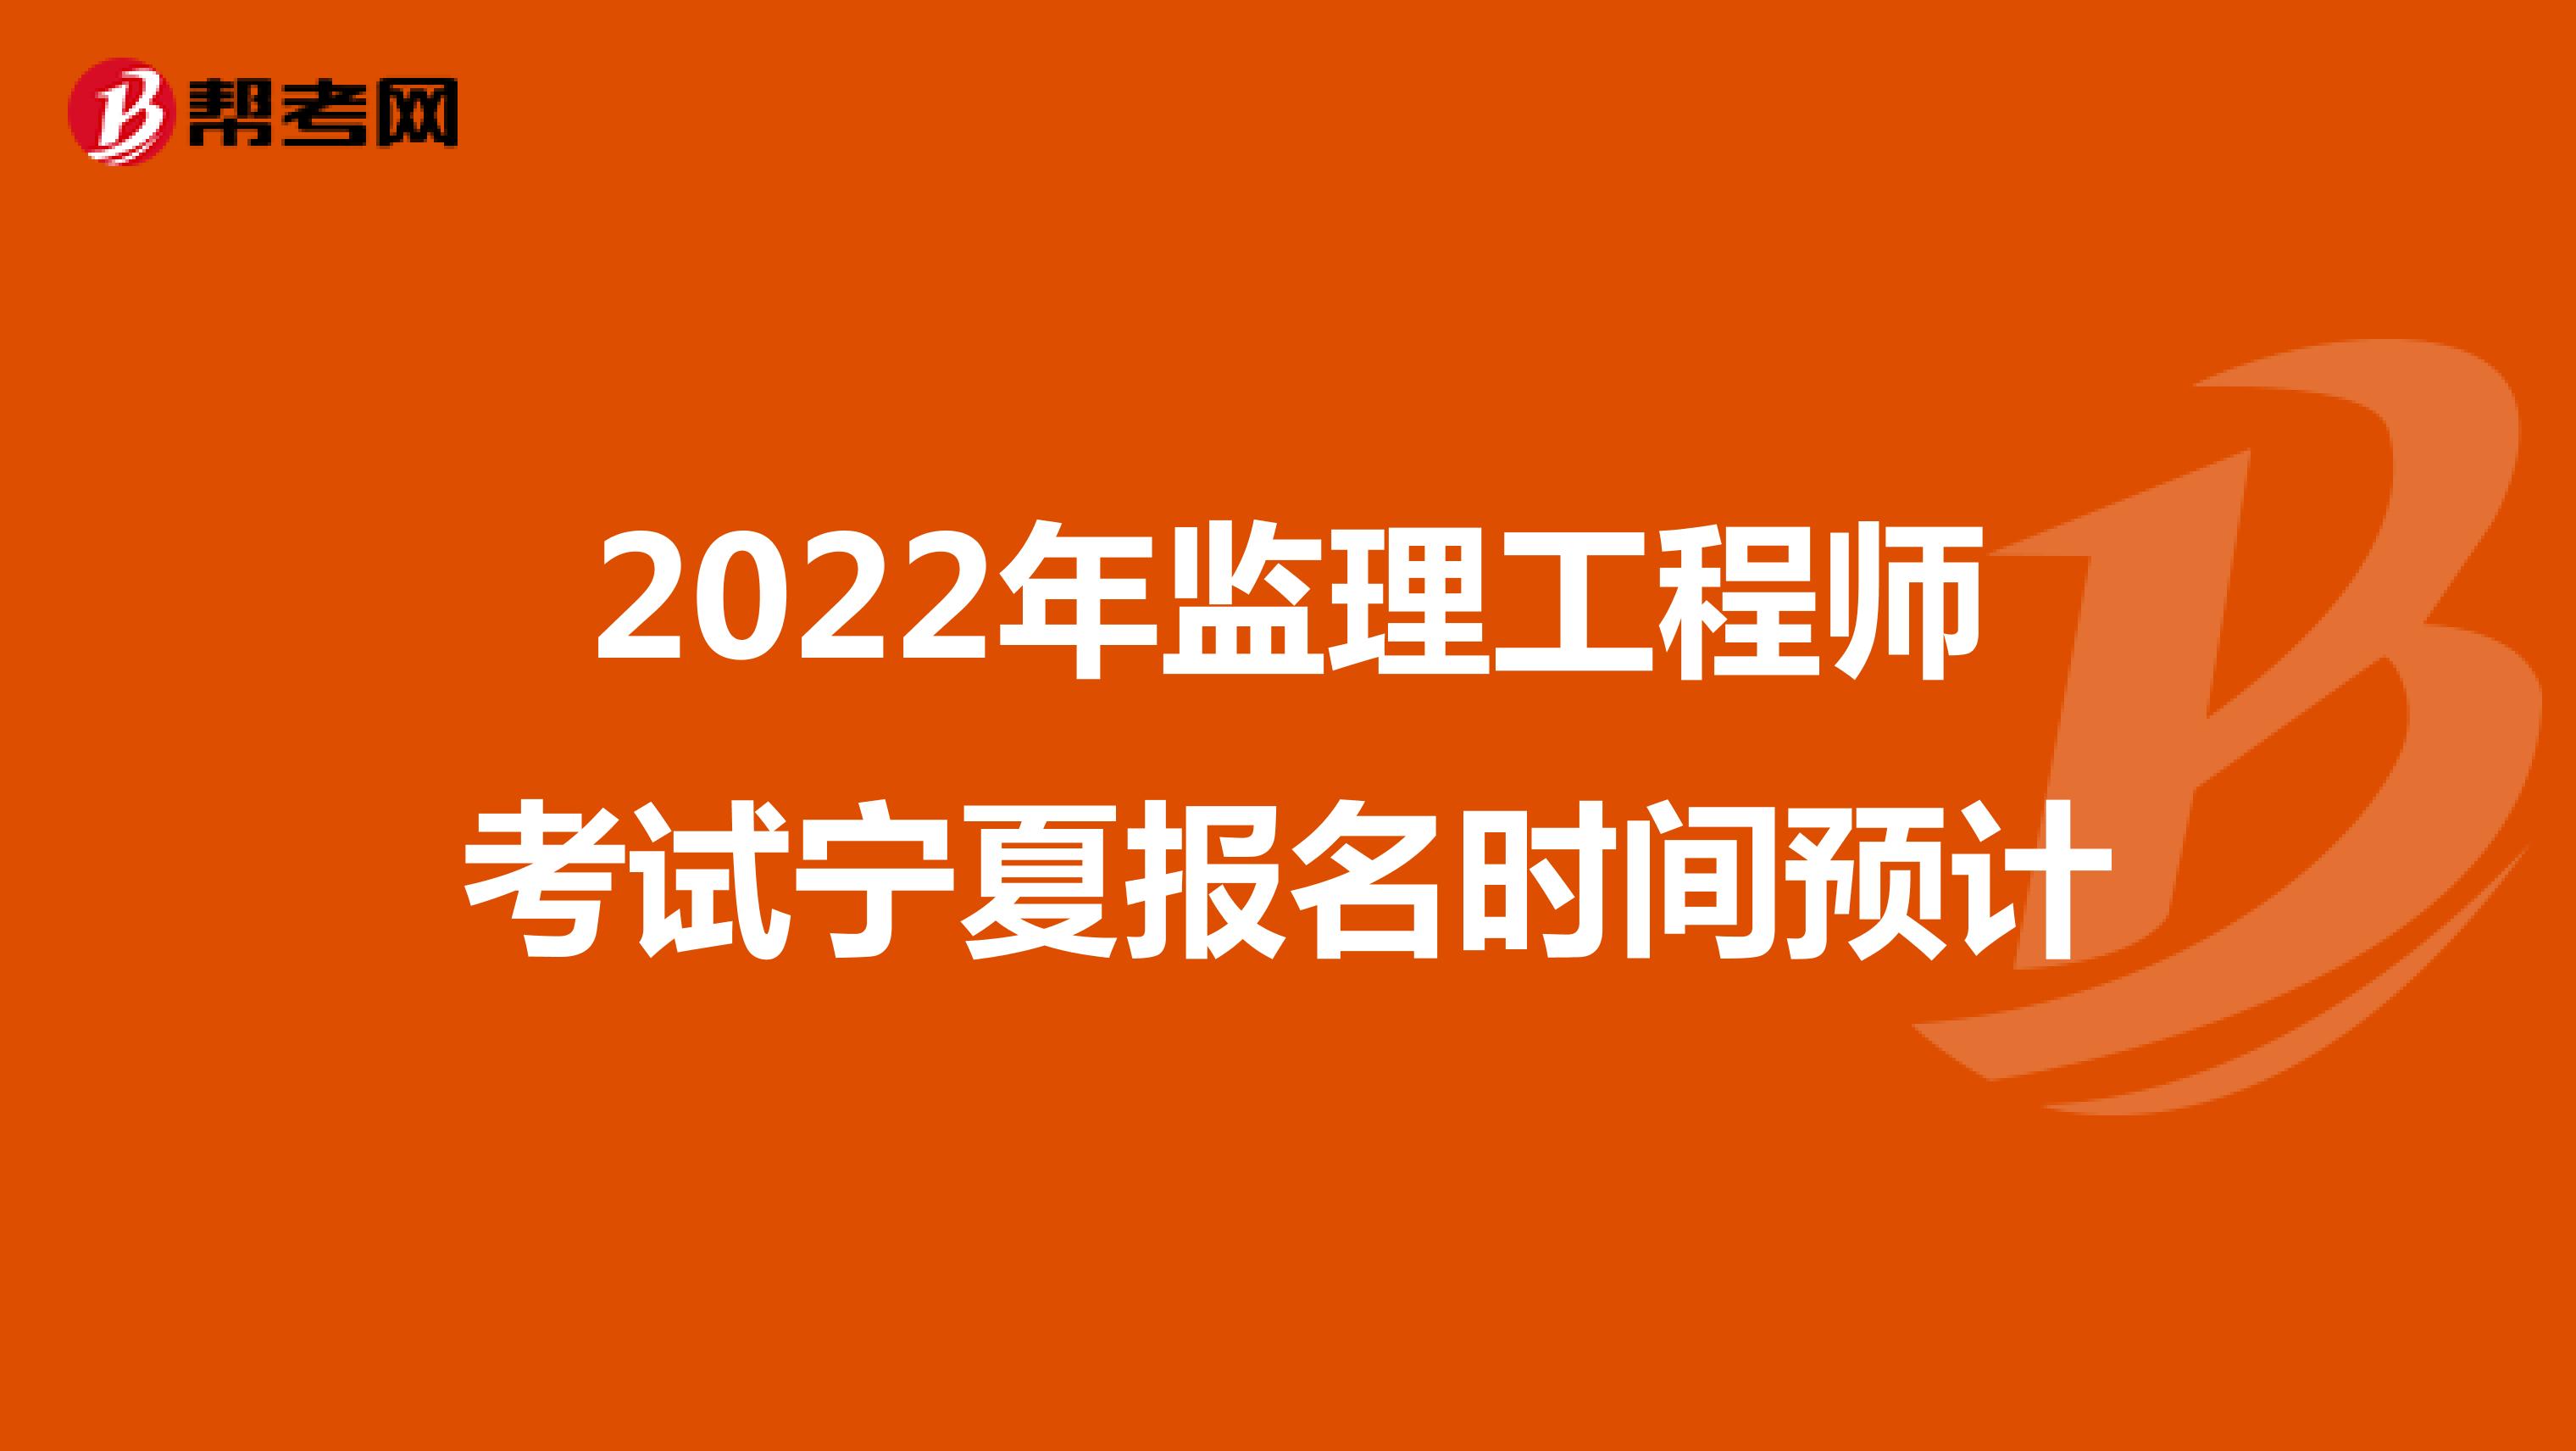 2022年监理工程师考试宁夏报名时间预计